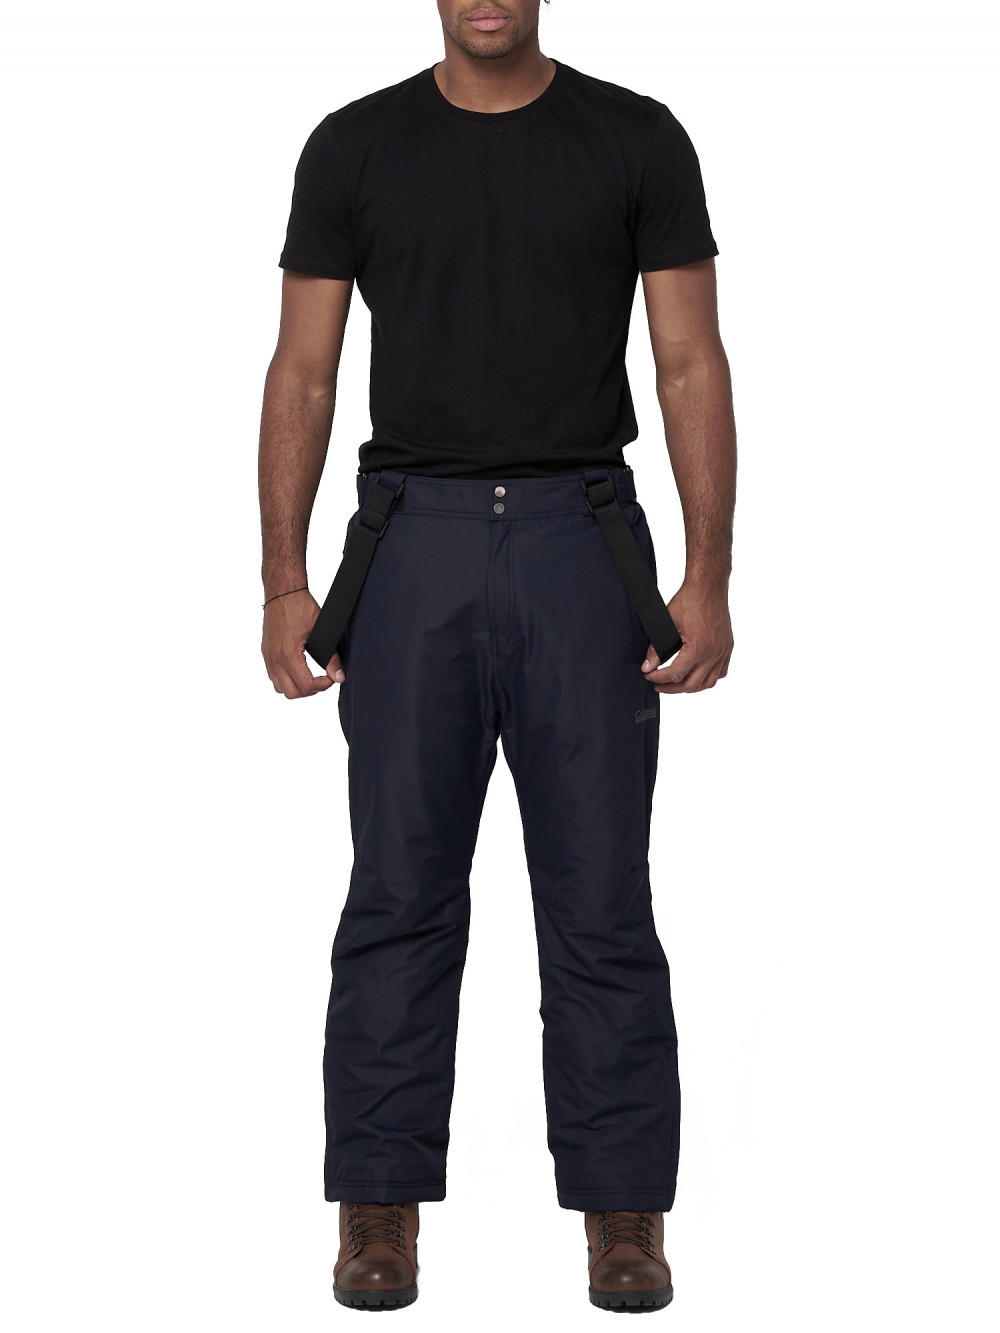 Полукомбинезон брюки горнолыжные мужские AD66414TS темно-синего цвета, 64